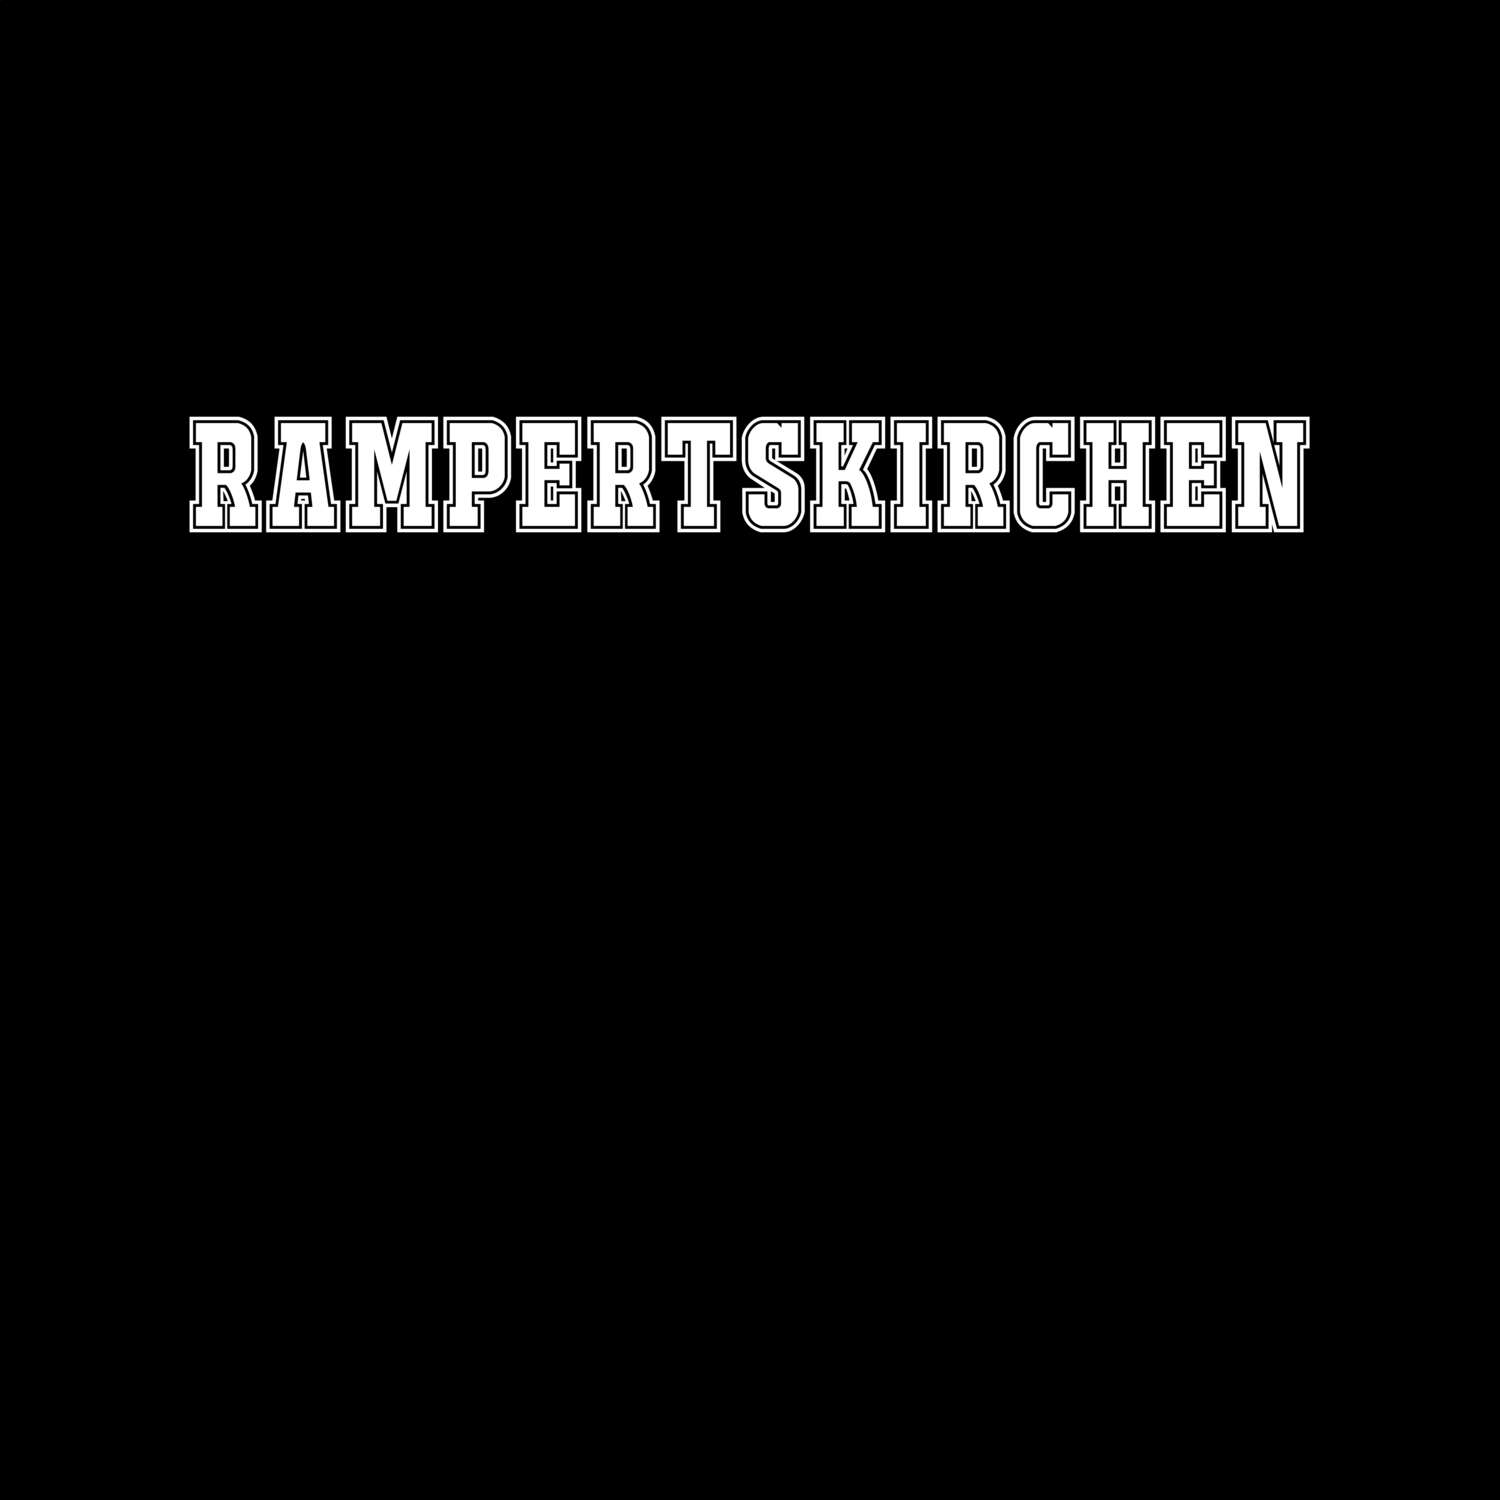 Rampertskirchen T-Shirt »Classic«